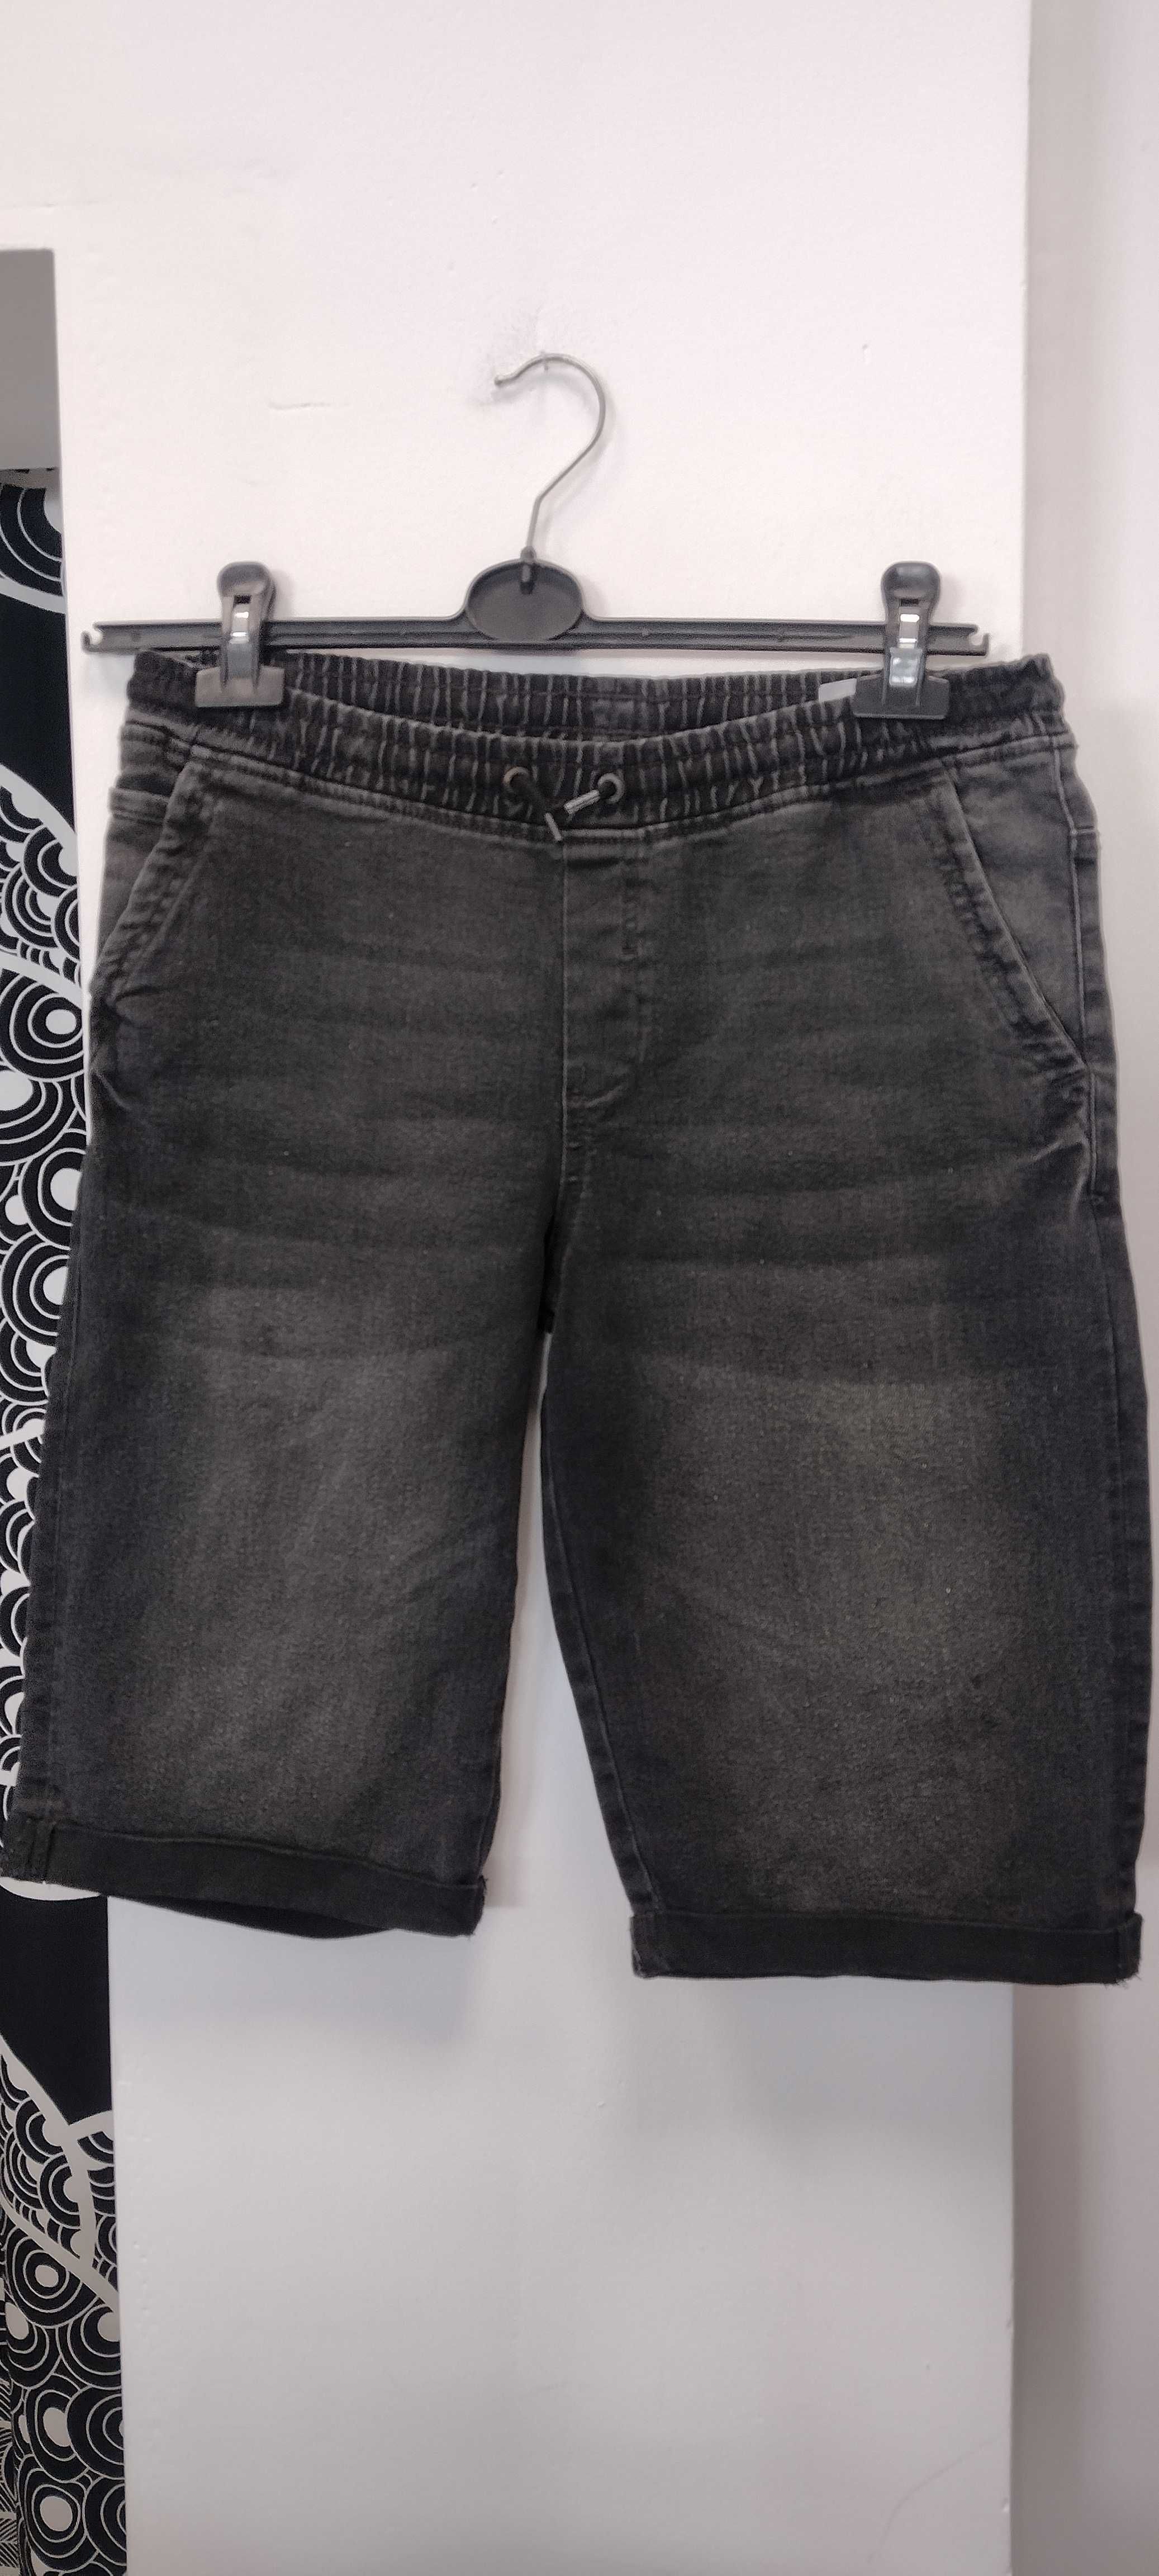 Spodenki jeansowe męskie C&A r. 170/176